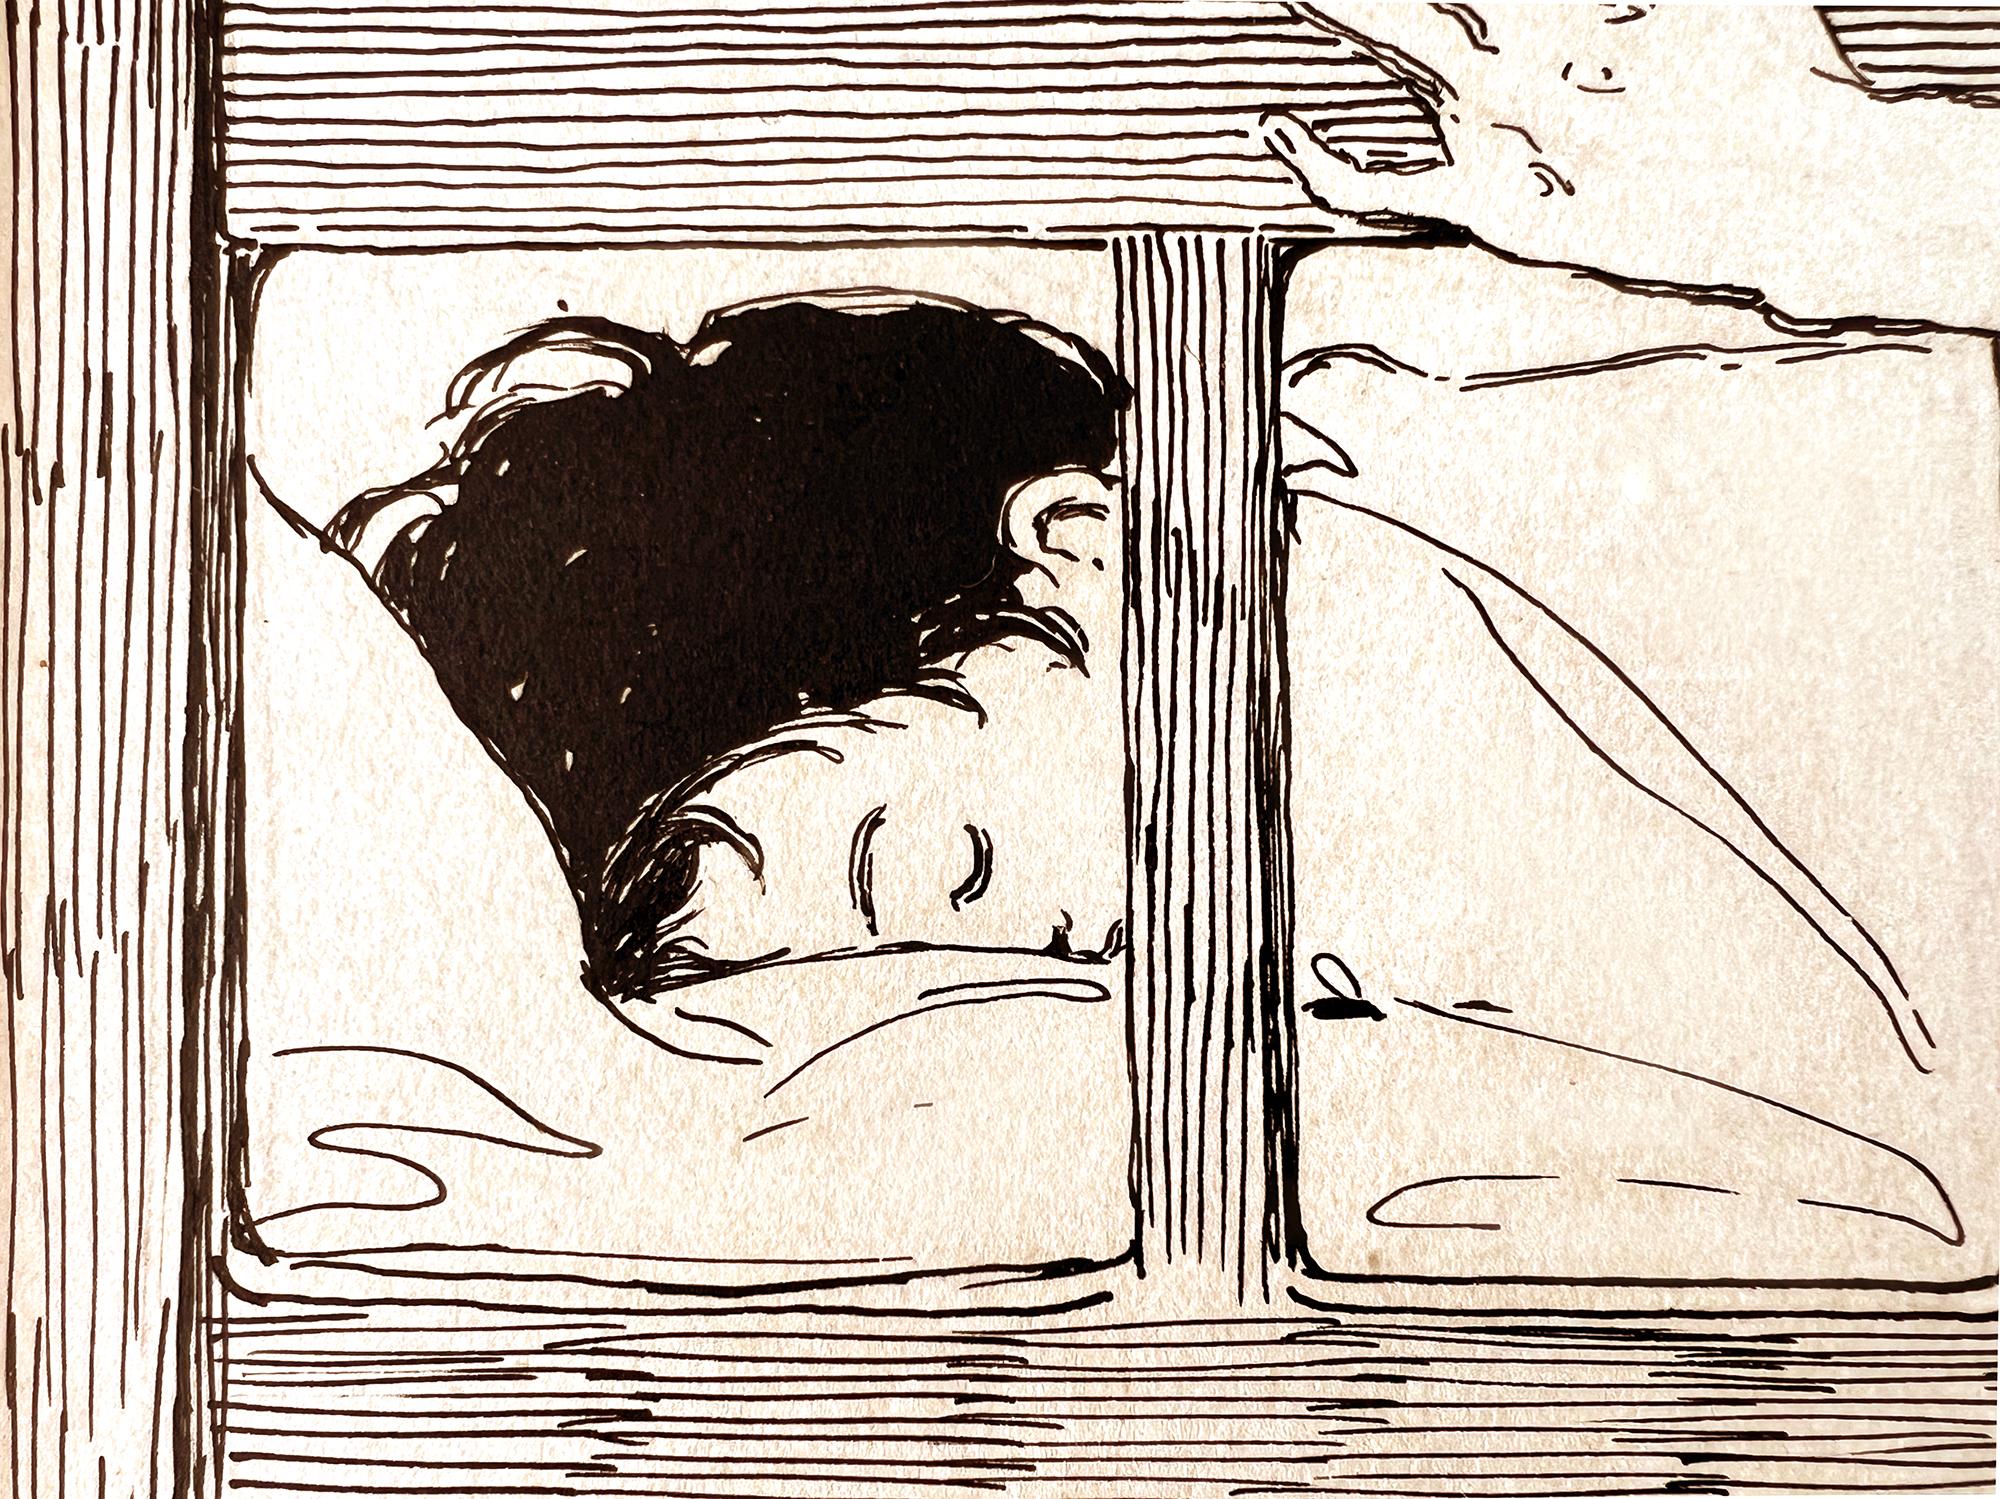 Amerikas größte Illustratorin zeichnet ein herzerwärmendes Bild einer Mutter, die ihr Kind zu Bett bringt. Die mütterliche Liebe zu ihren Kindern ist das ikonischste Thema der Künstlerin. Dieses spektakuläre Beispiel wurde mit nur wenigen Details